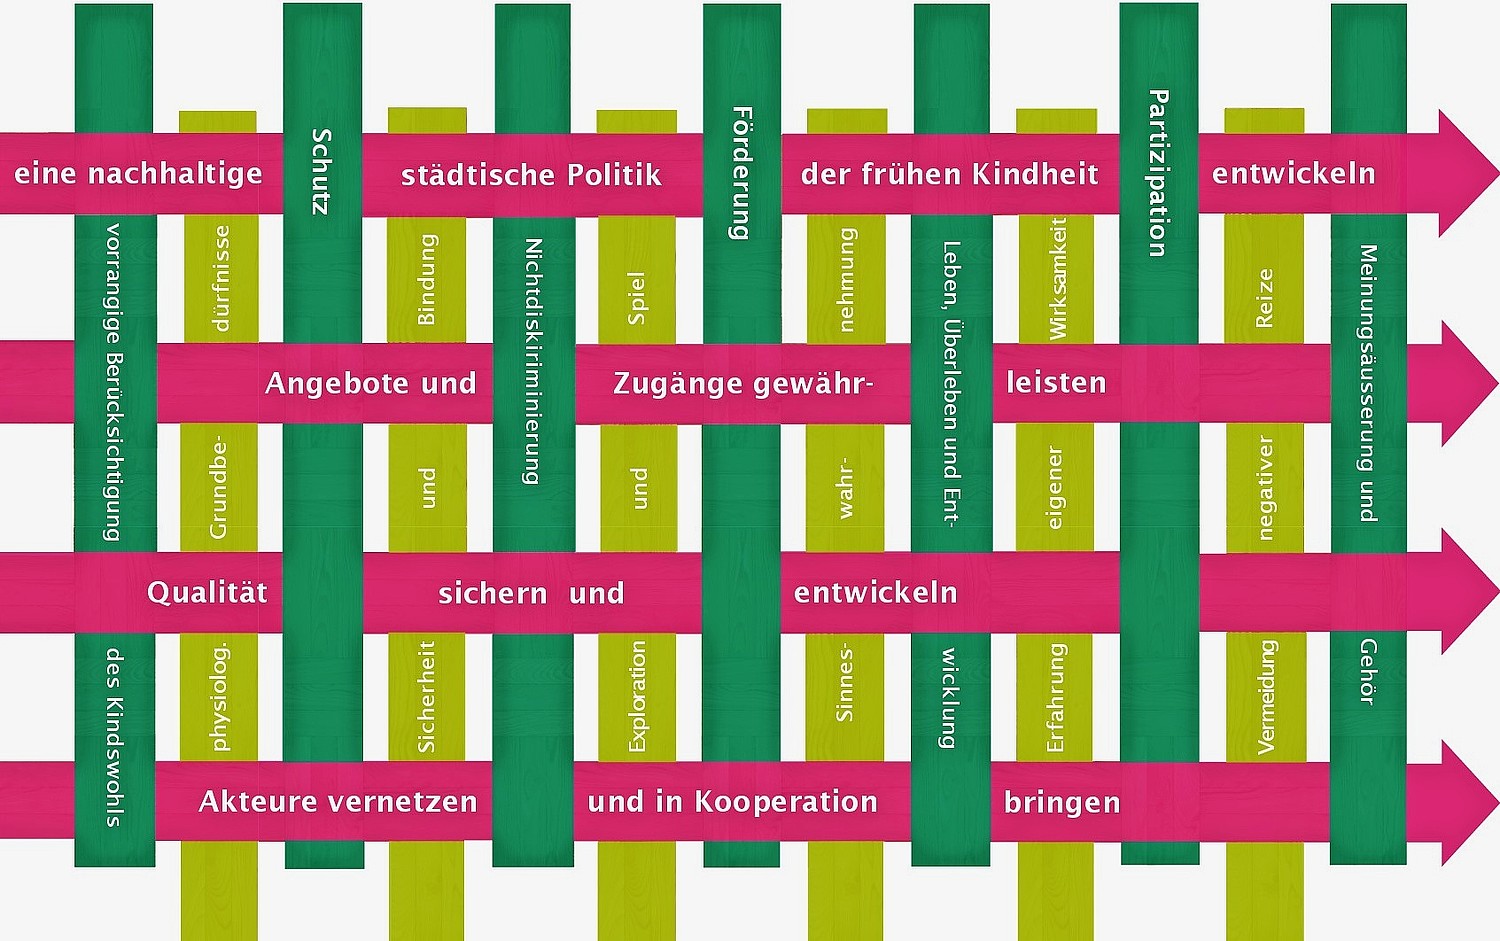 Die Grafik stellt die Eckpunkte des Projektes in Aarau dar: vier Handlungsfelder (pink), basierend auf den Rechten (dunkelgrün) und Bedürfnissen (hellgrün) des Kindes.